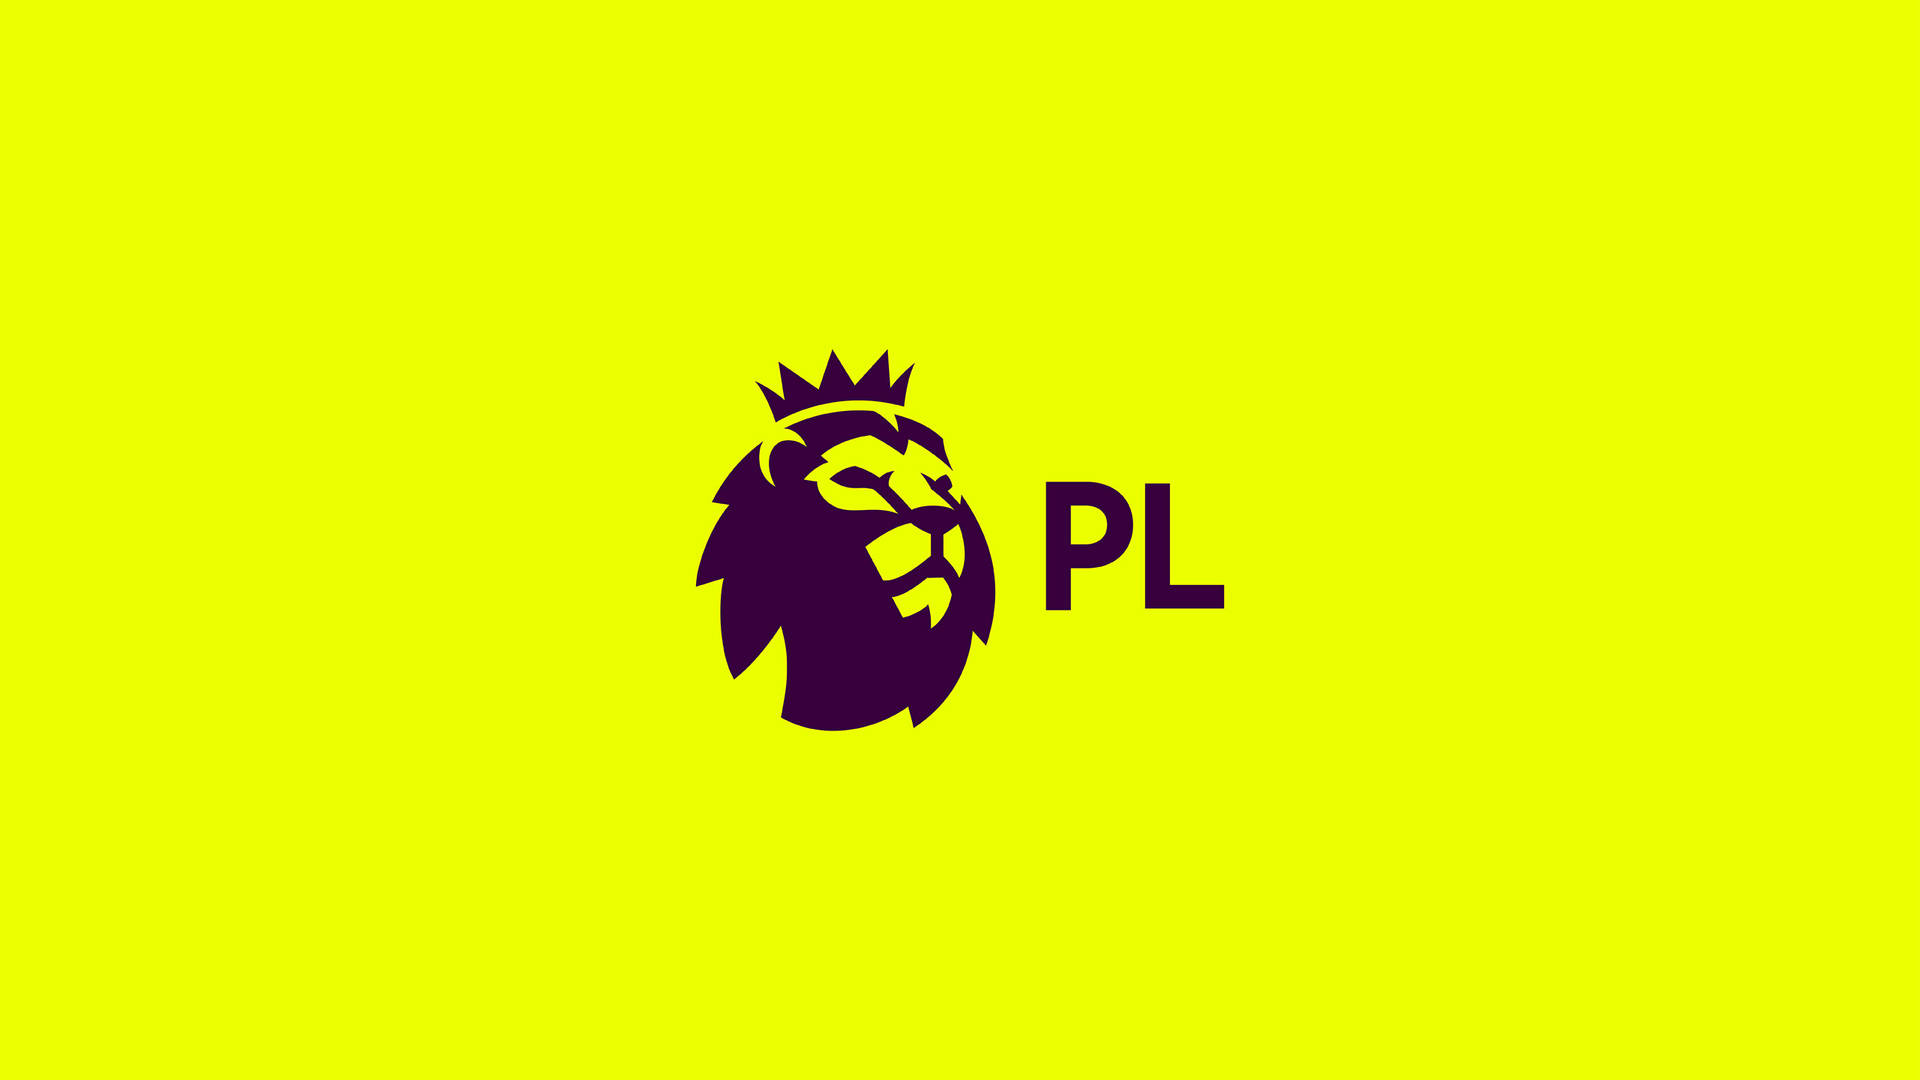 Premier League In Yellow Wallpaper